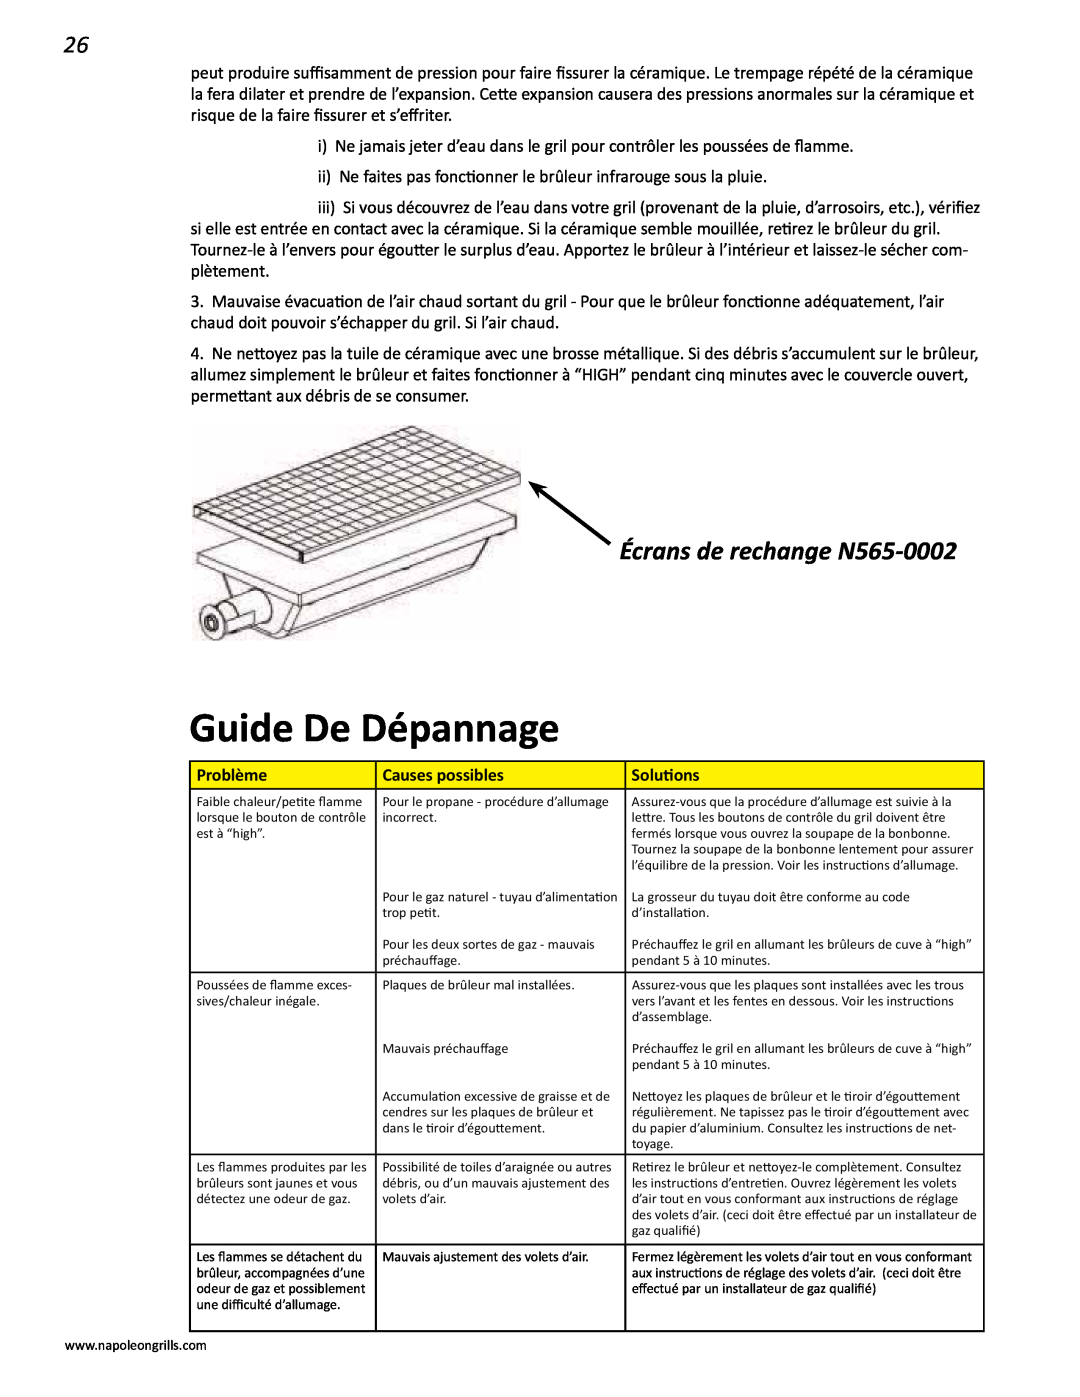 Napoleon Grills V 600, V 450 manual Guide De Dépannage, Écrans de rechange N565-0002 